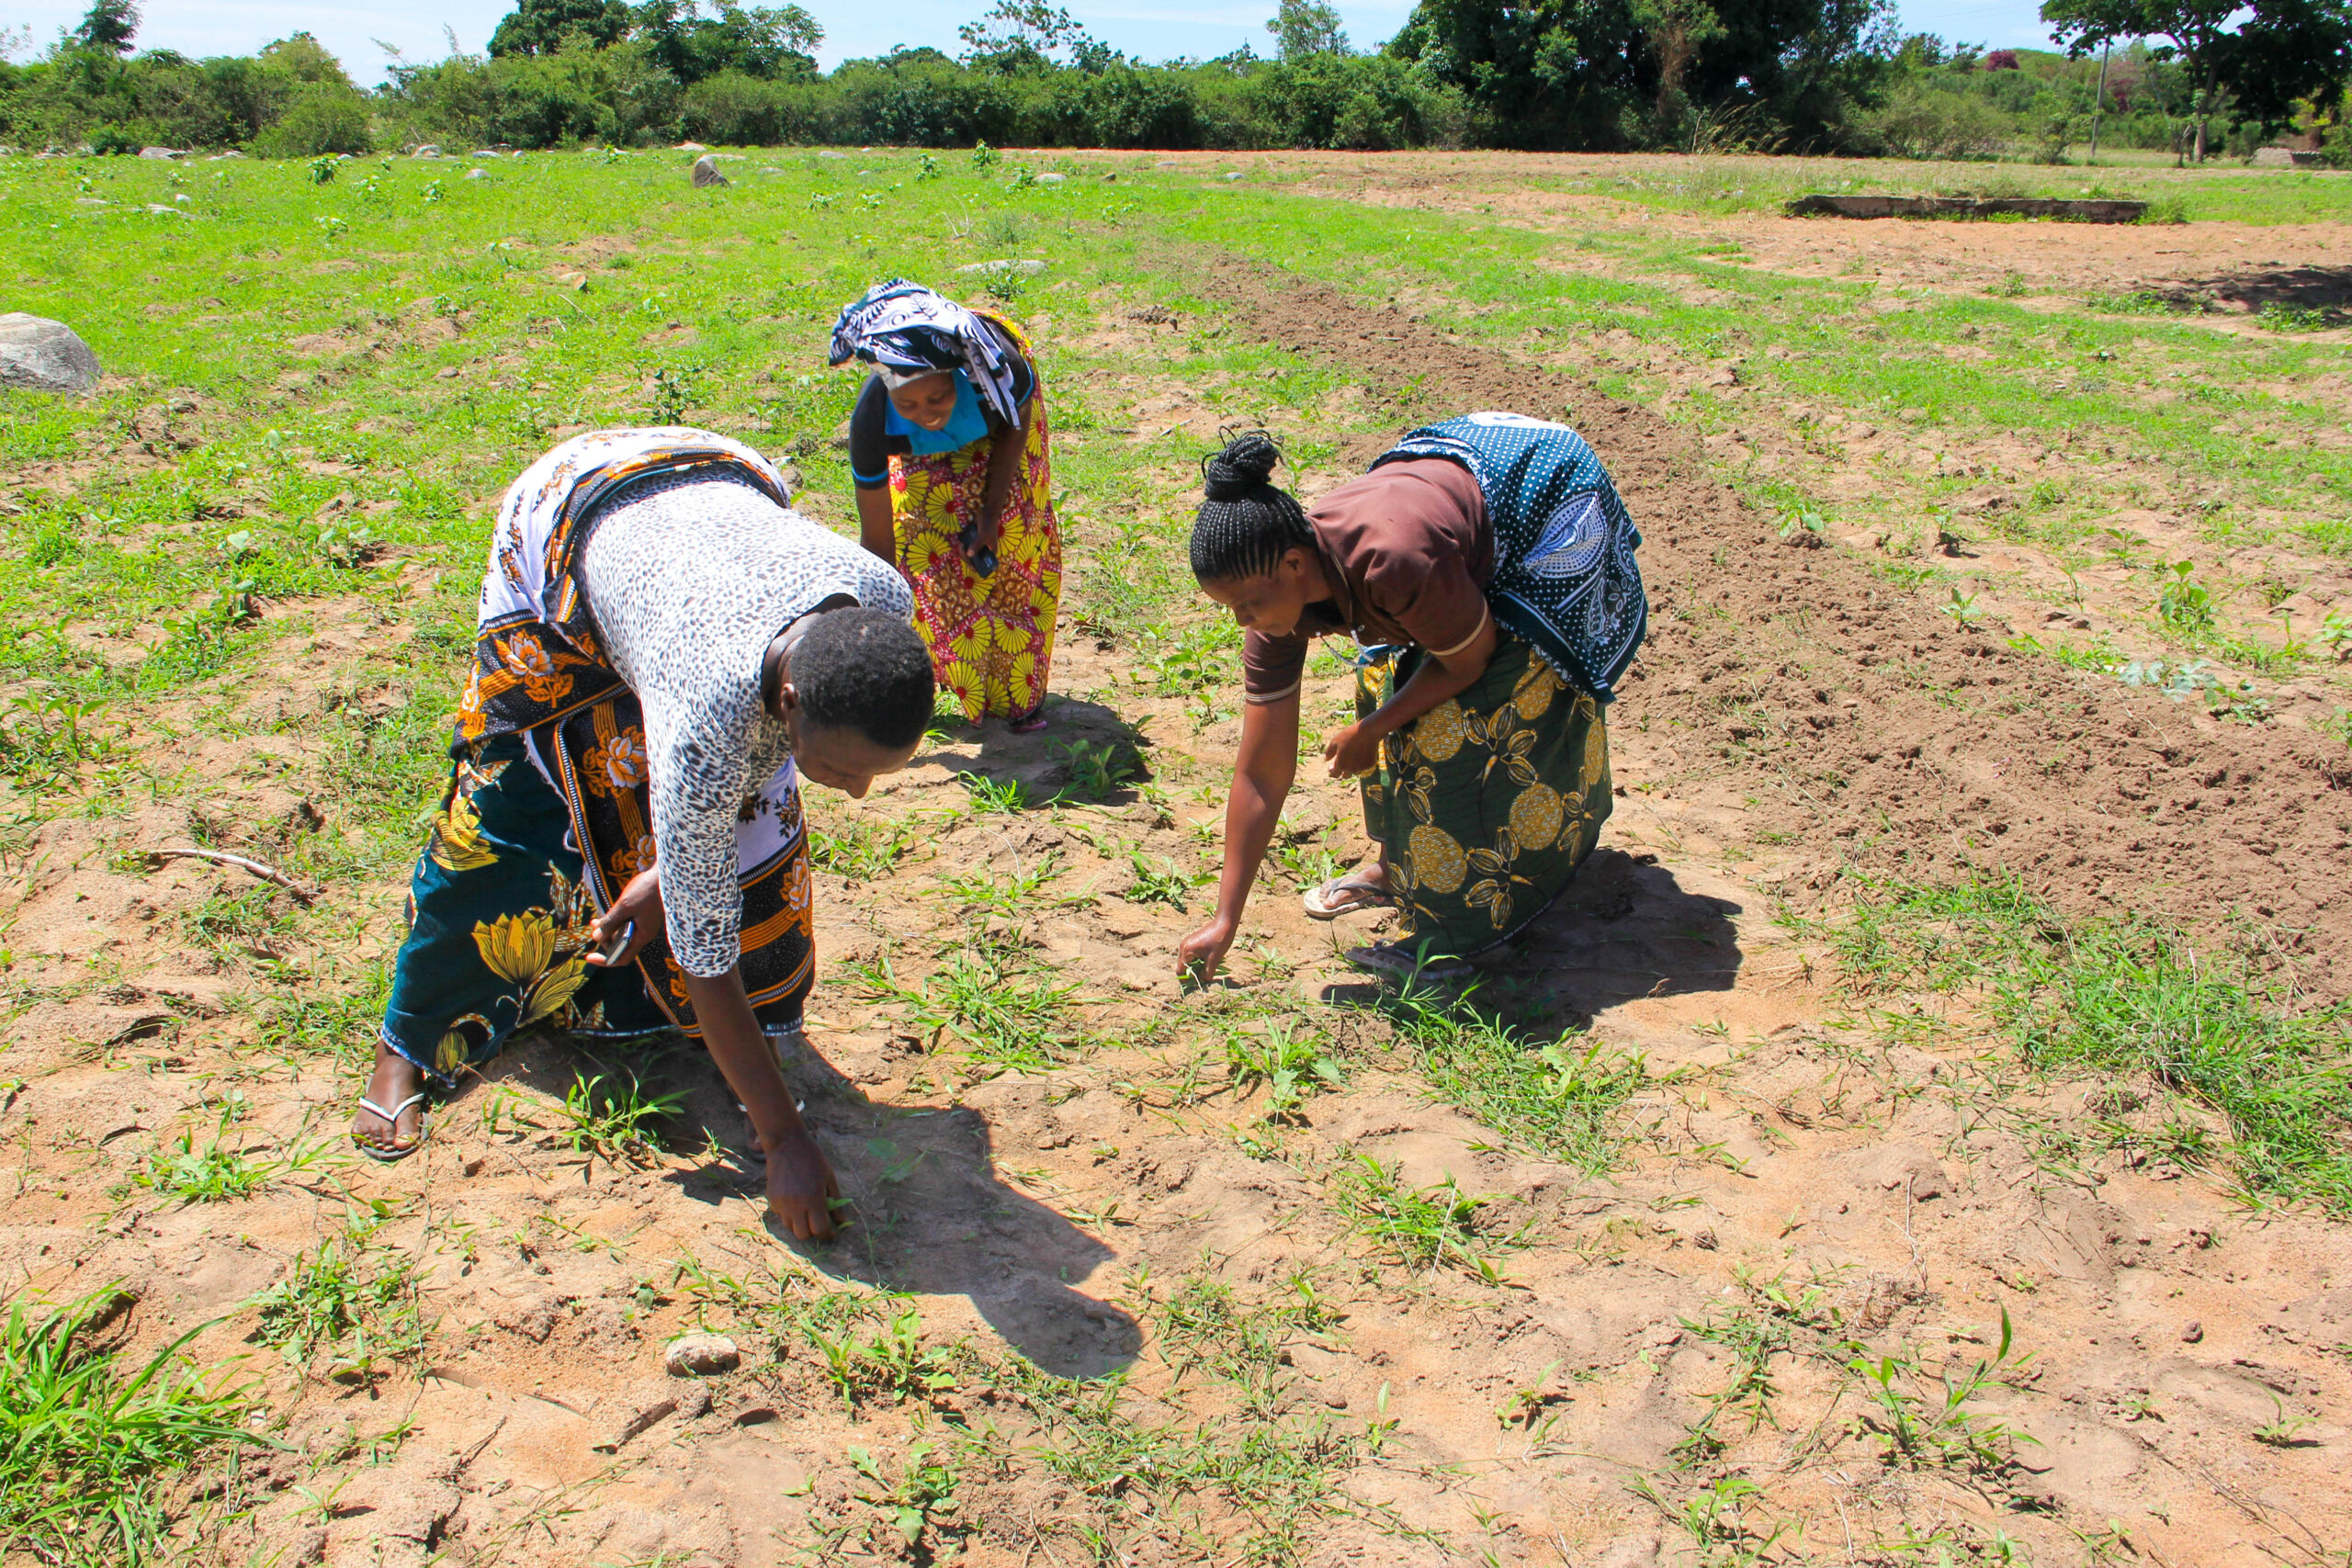 A foto mostra três mulheres negras usando vestes coloridas colhendo vegetais em um campo de plantação.